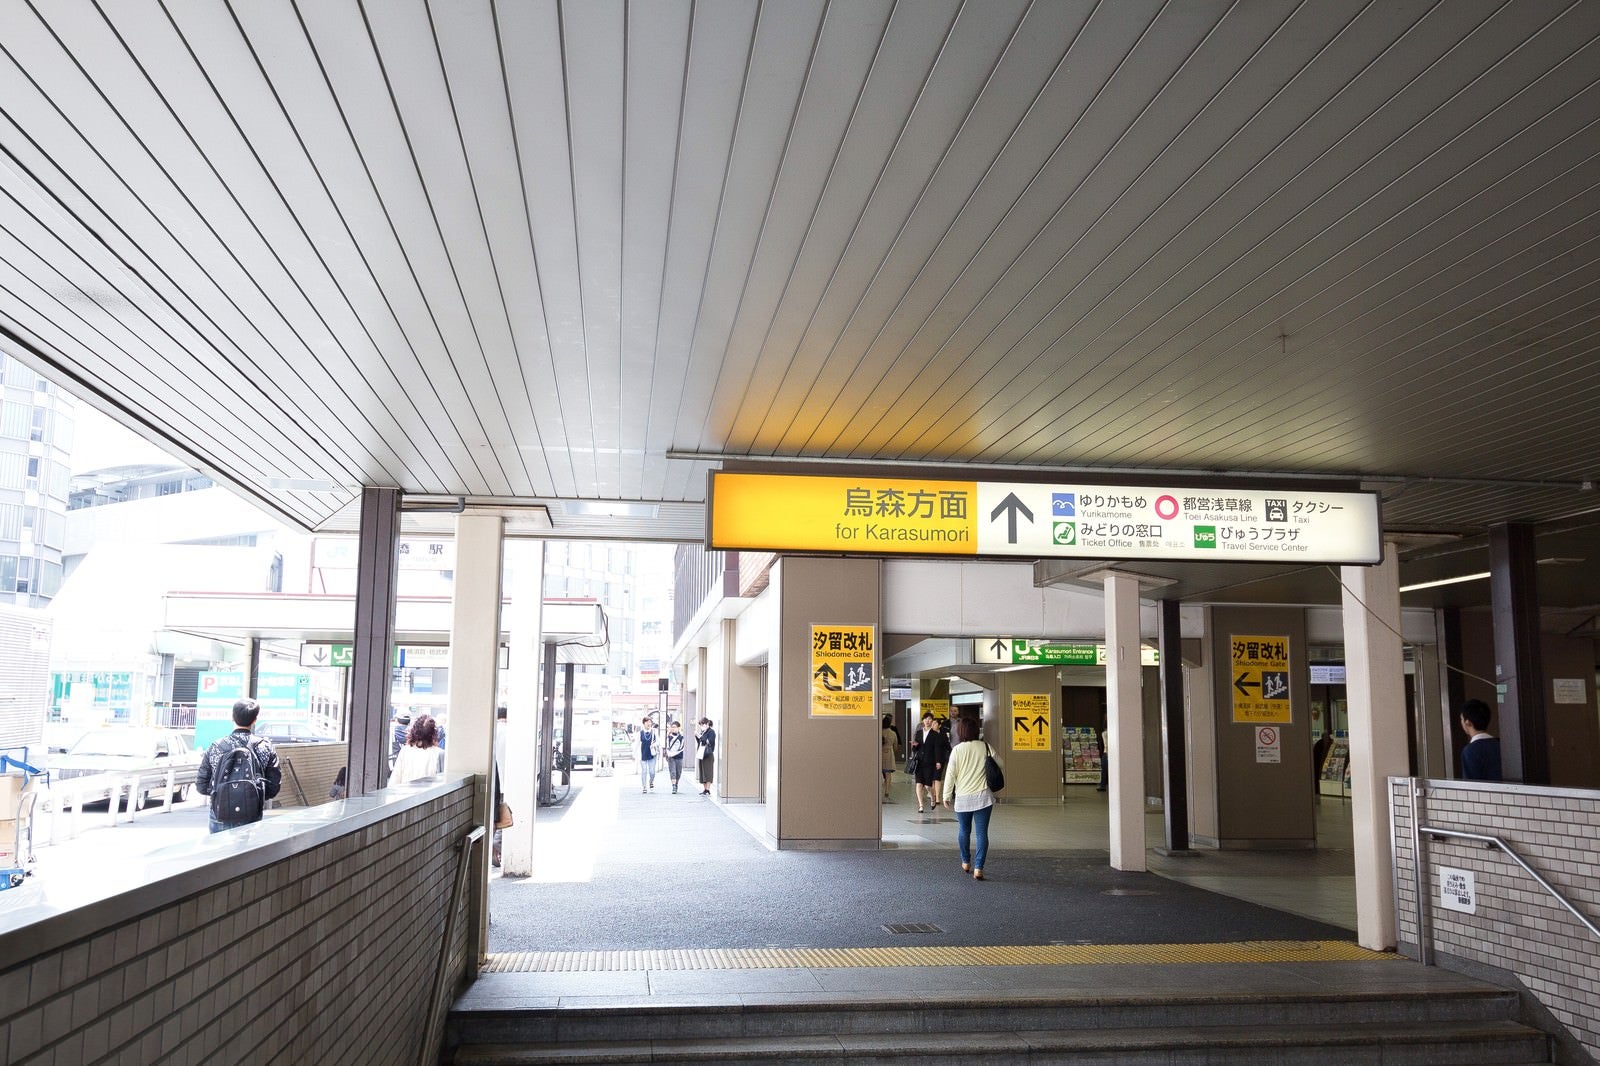 「新橋駅汐留方面出口」の写真